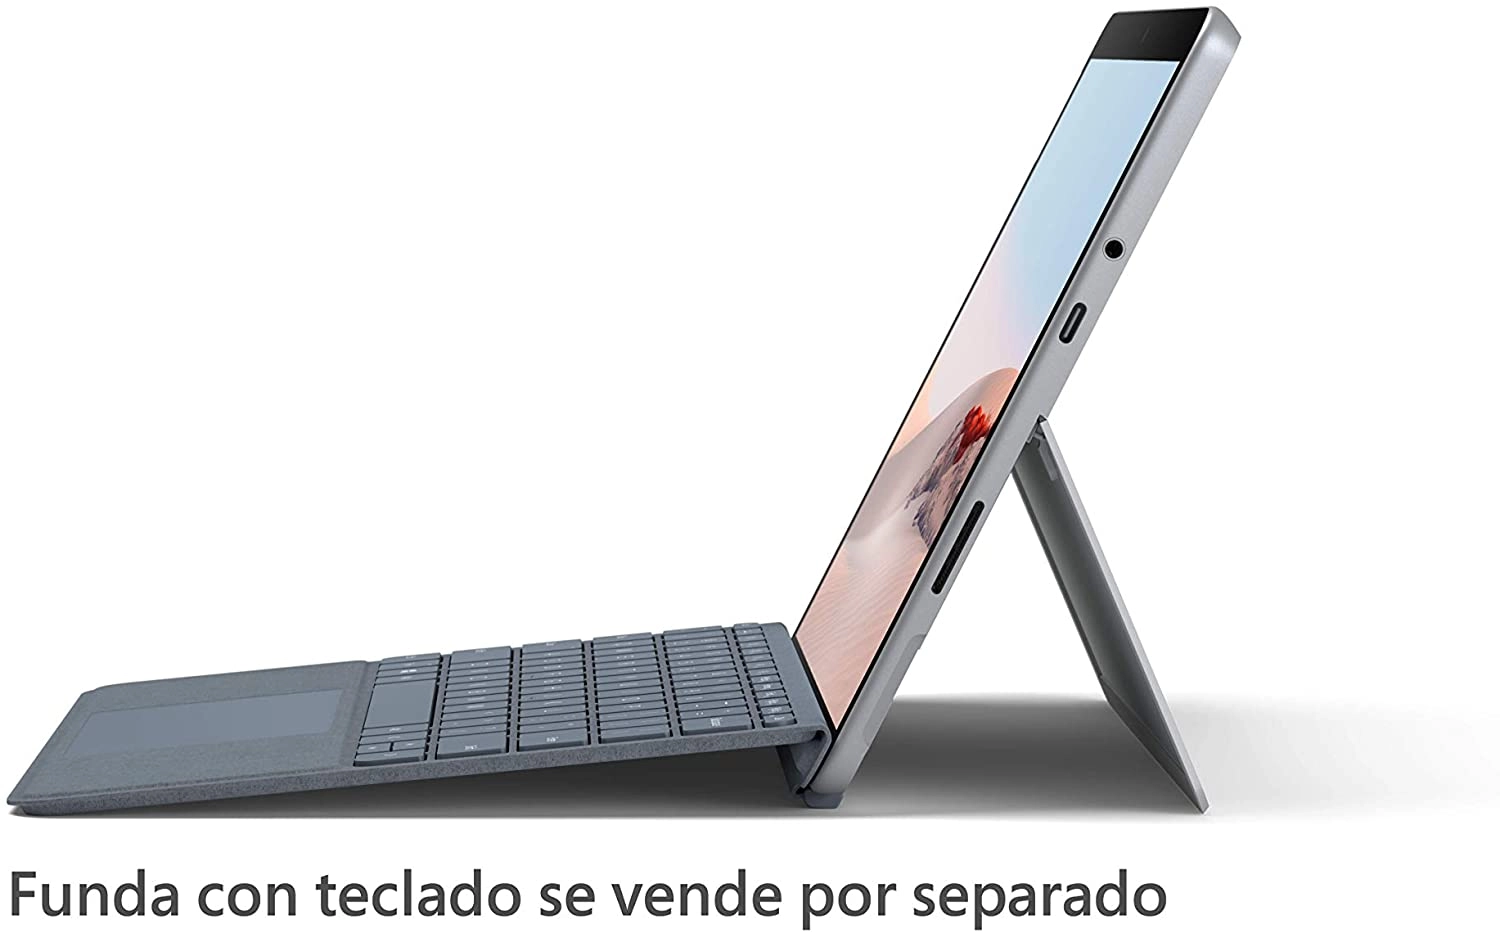 Microsoft Surface Go 2 laptop image